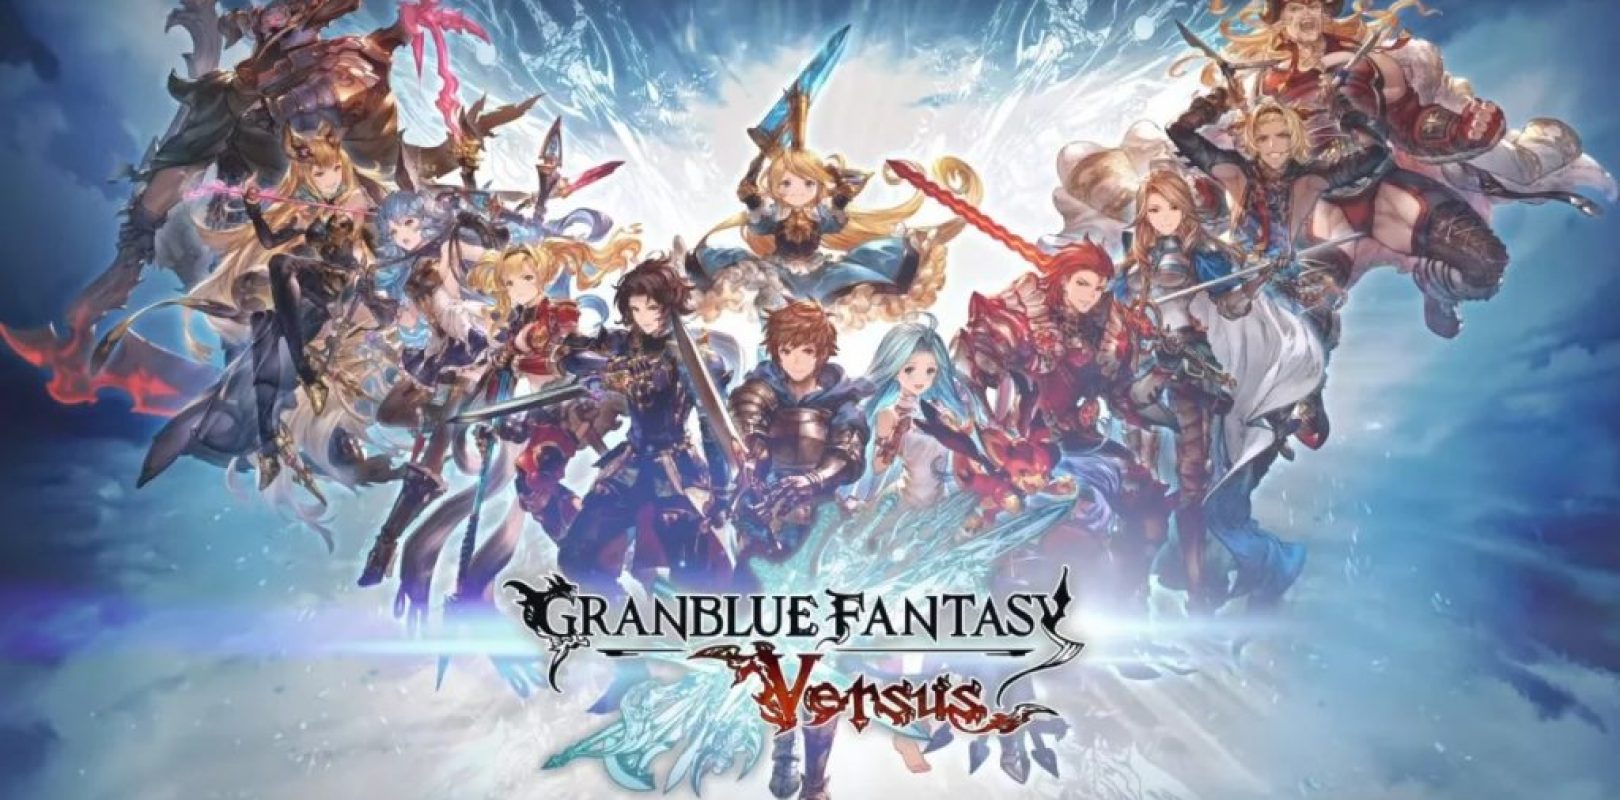 Granblue Fantasy Versus - Power Gaming